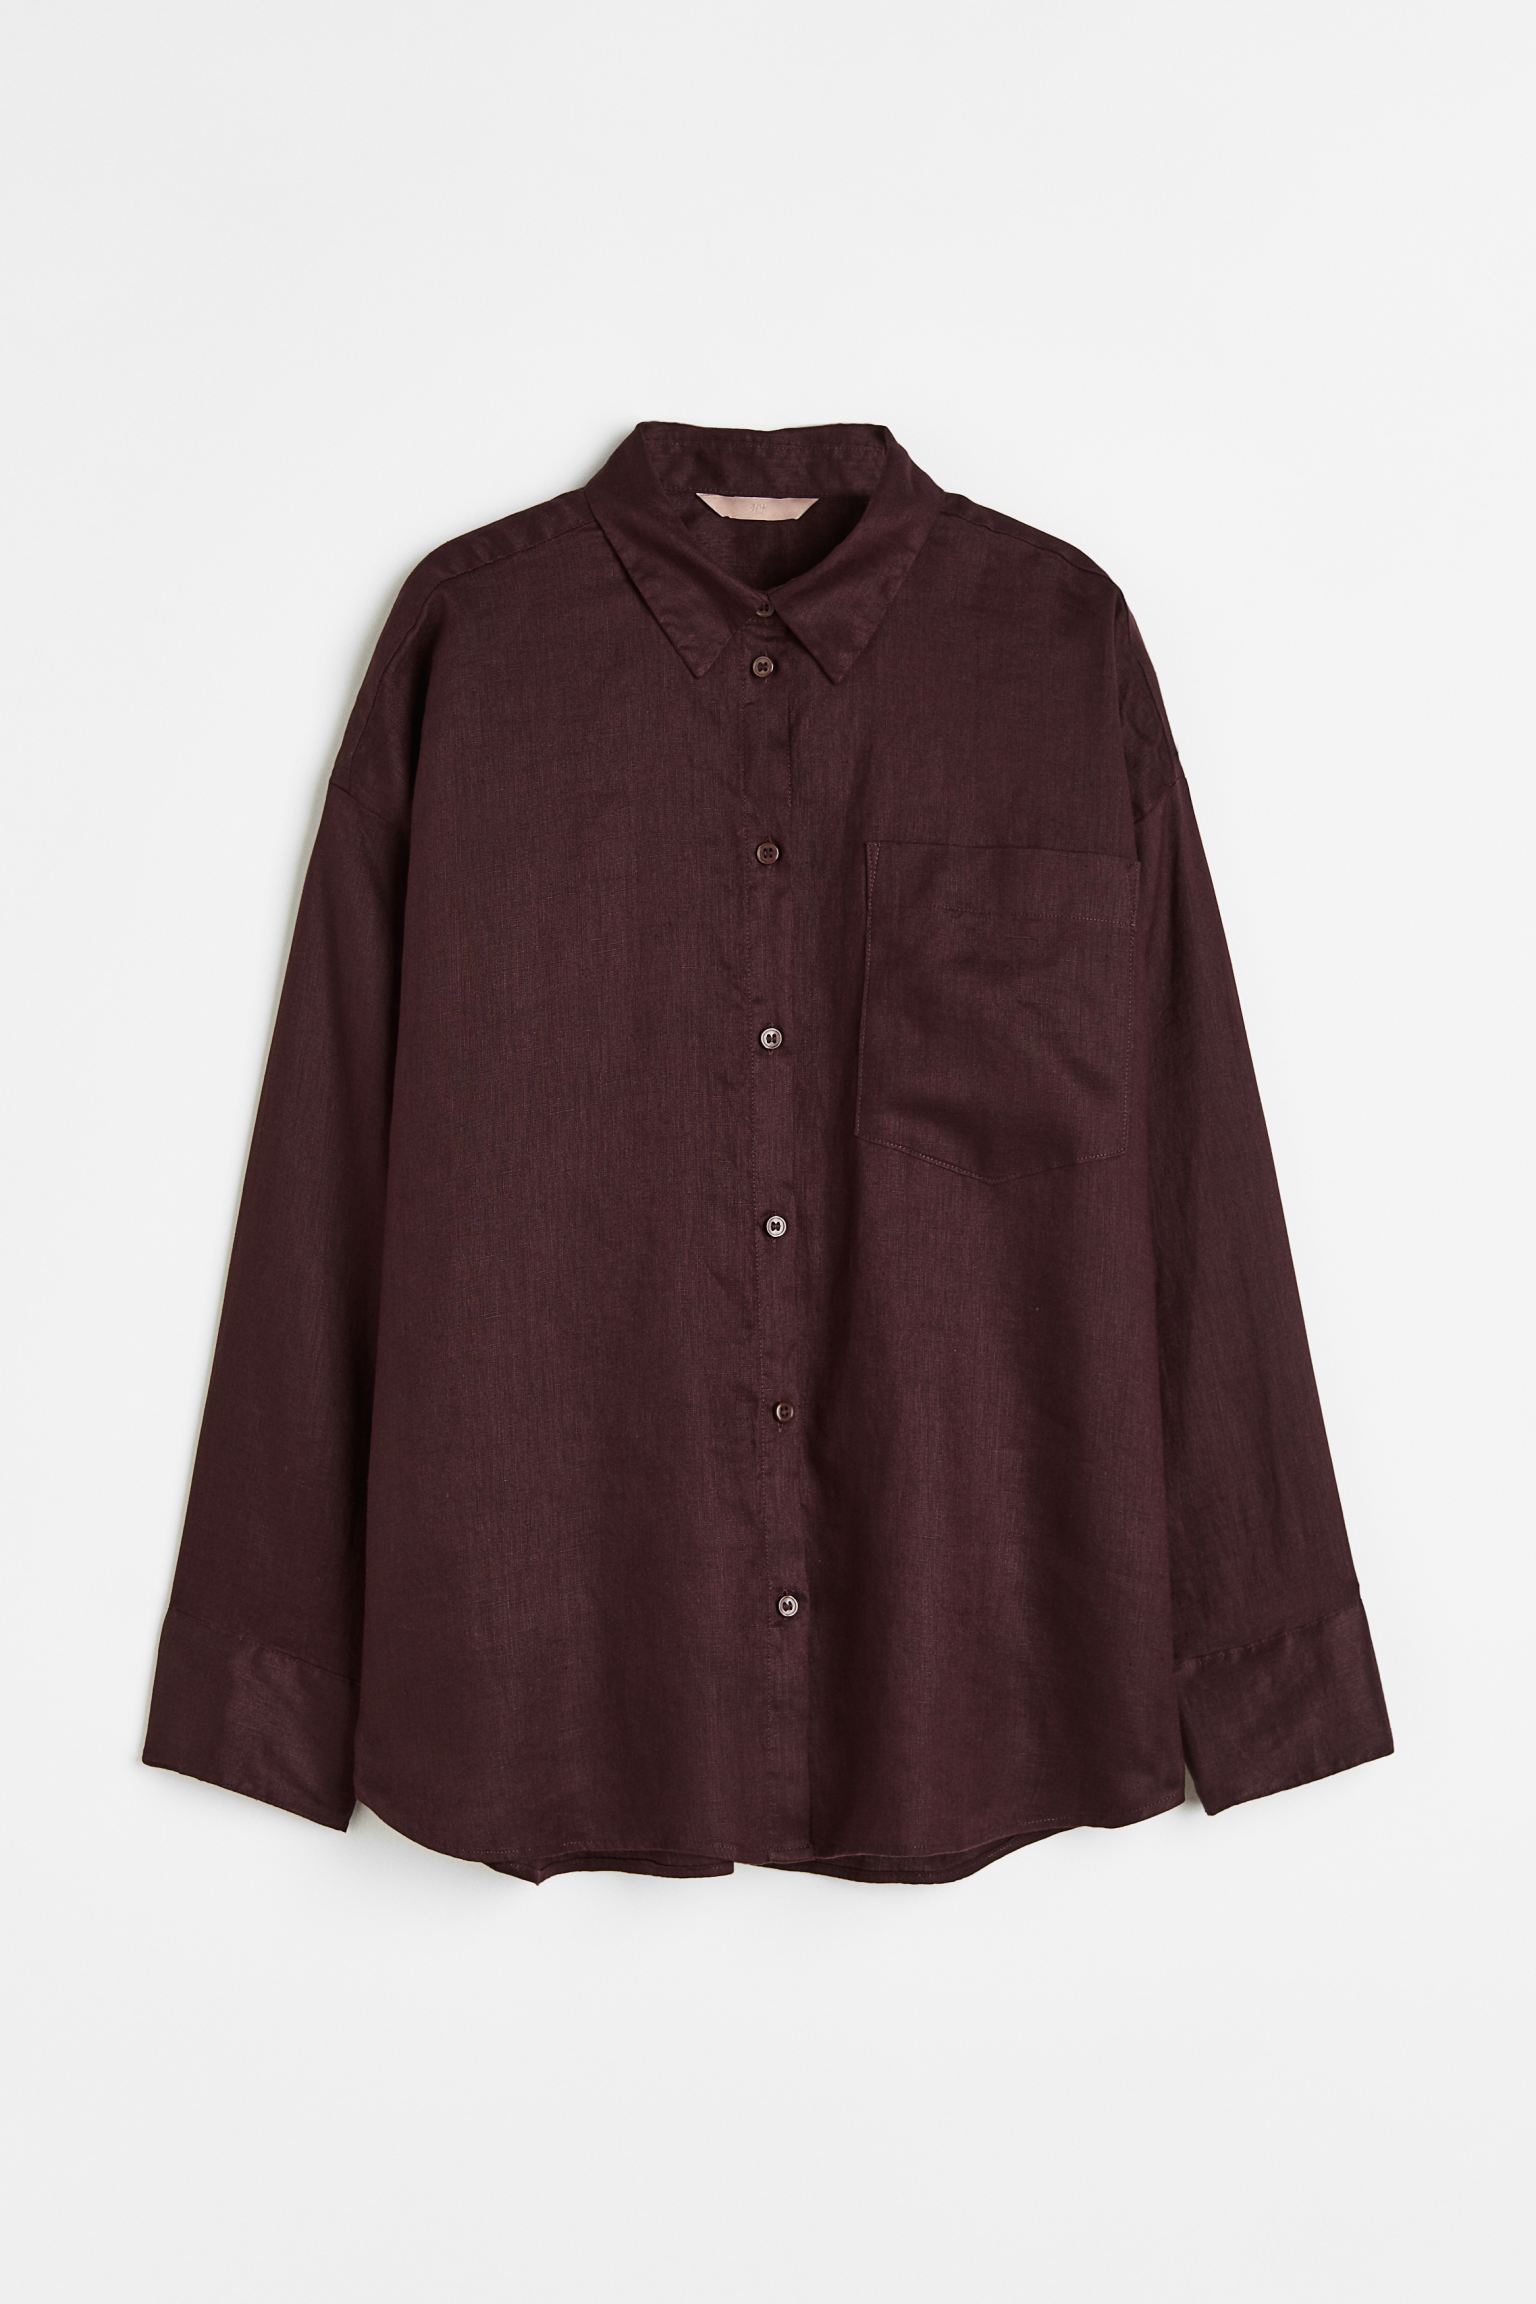 Рубашка женская H&M 1073662006 коричневая XL (доставка из-за рубежа)